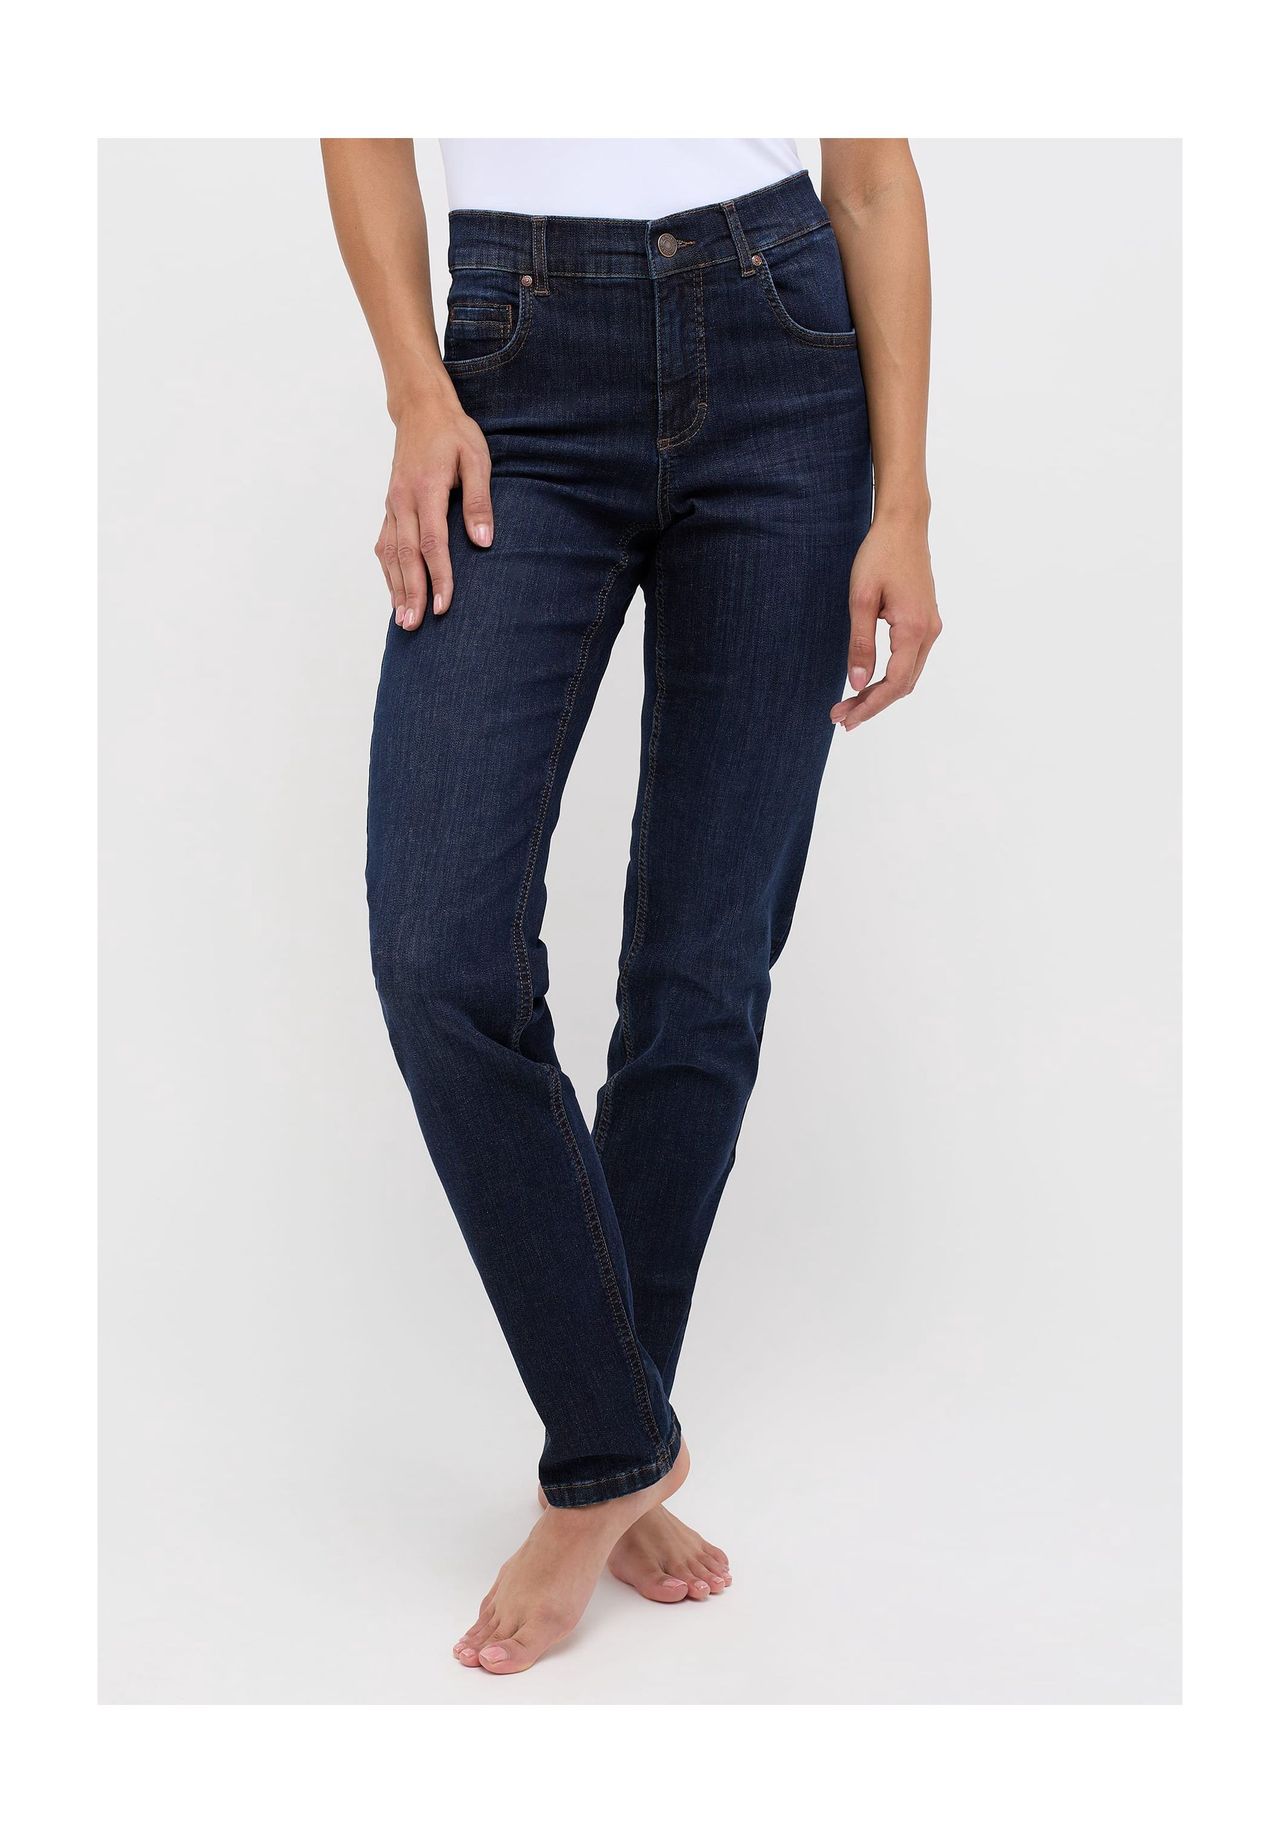 Jeans elastisch kaufen | GALERIA